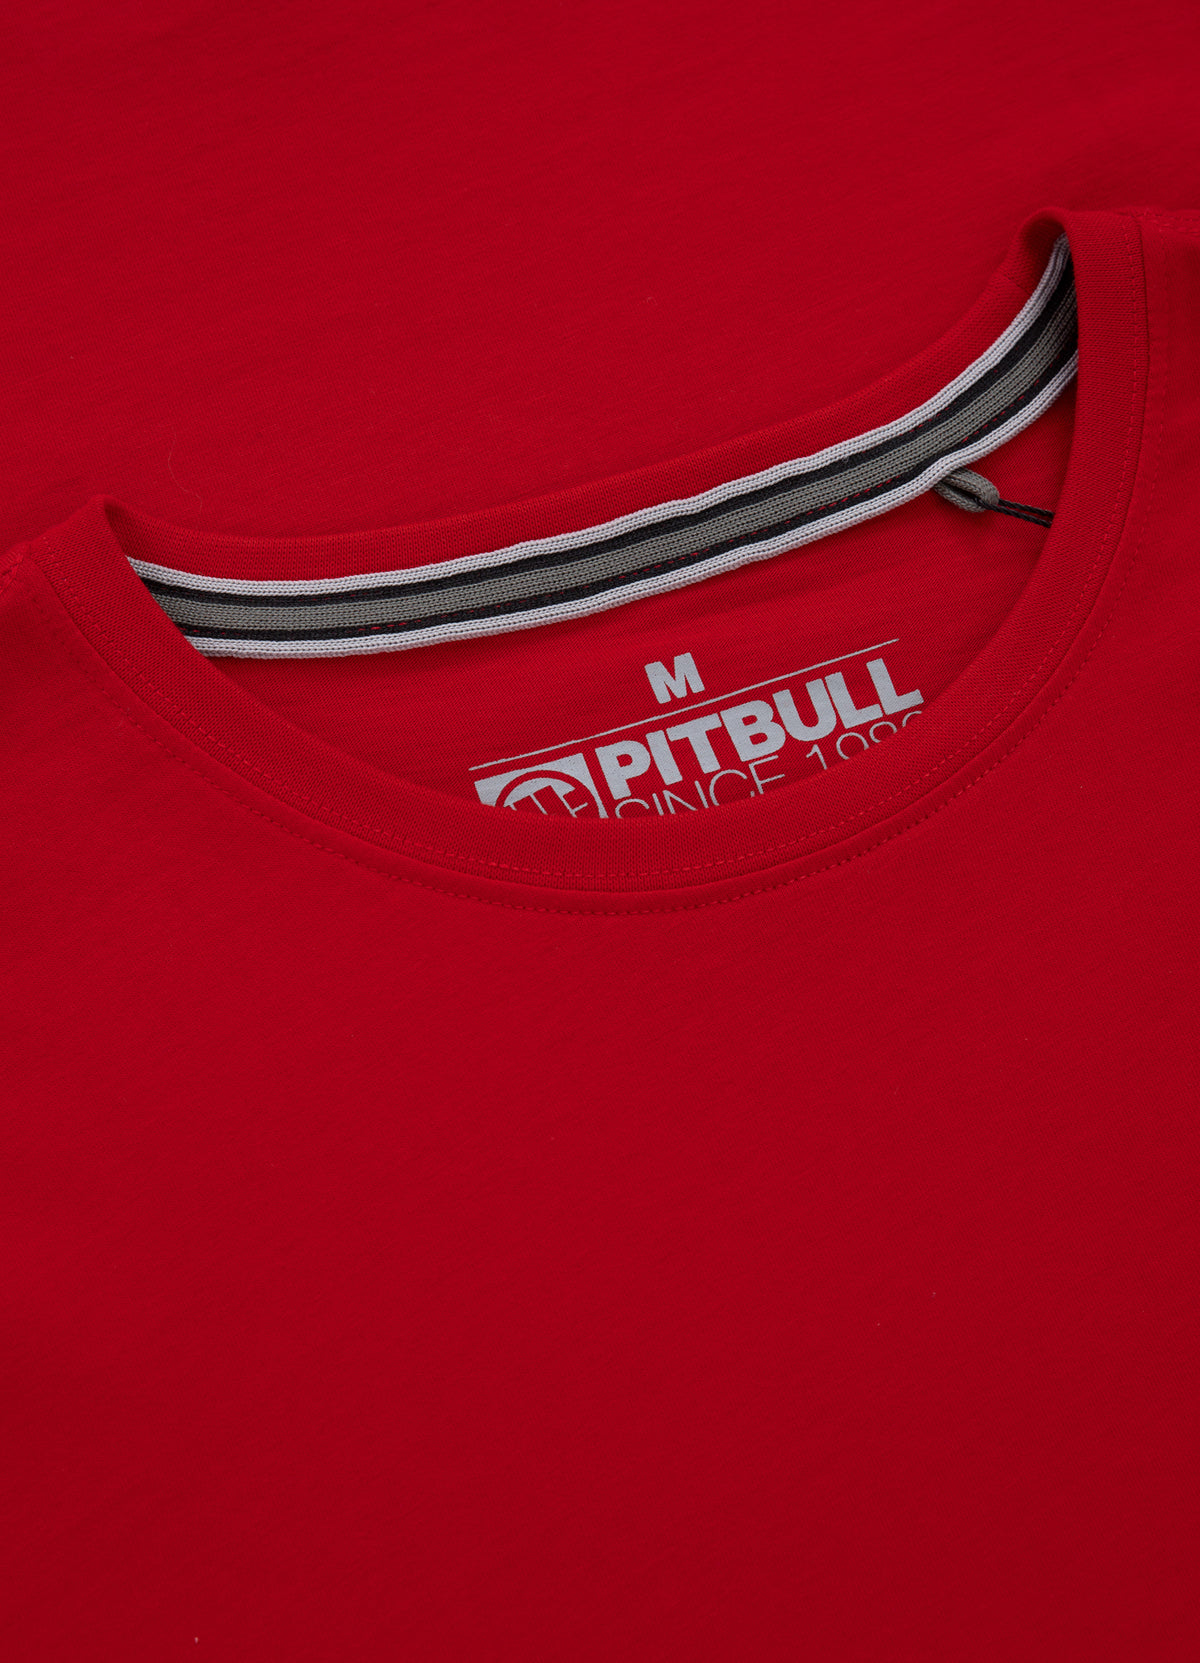 SMALL LOGO Lightweight Red T-shirt - Pitbullstore.eu